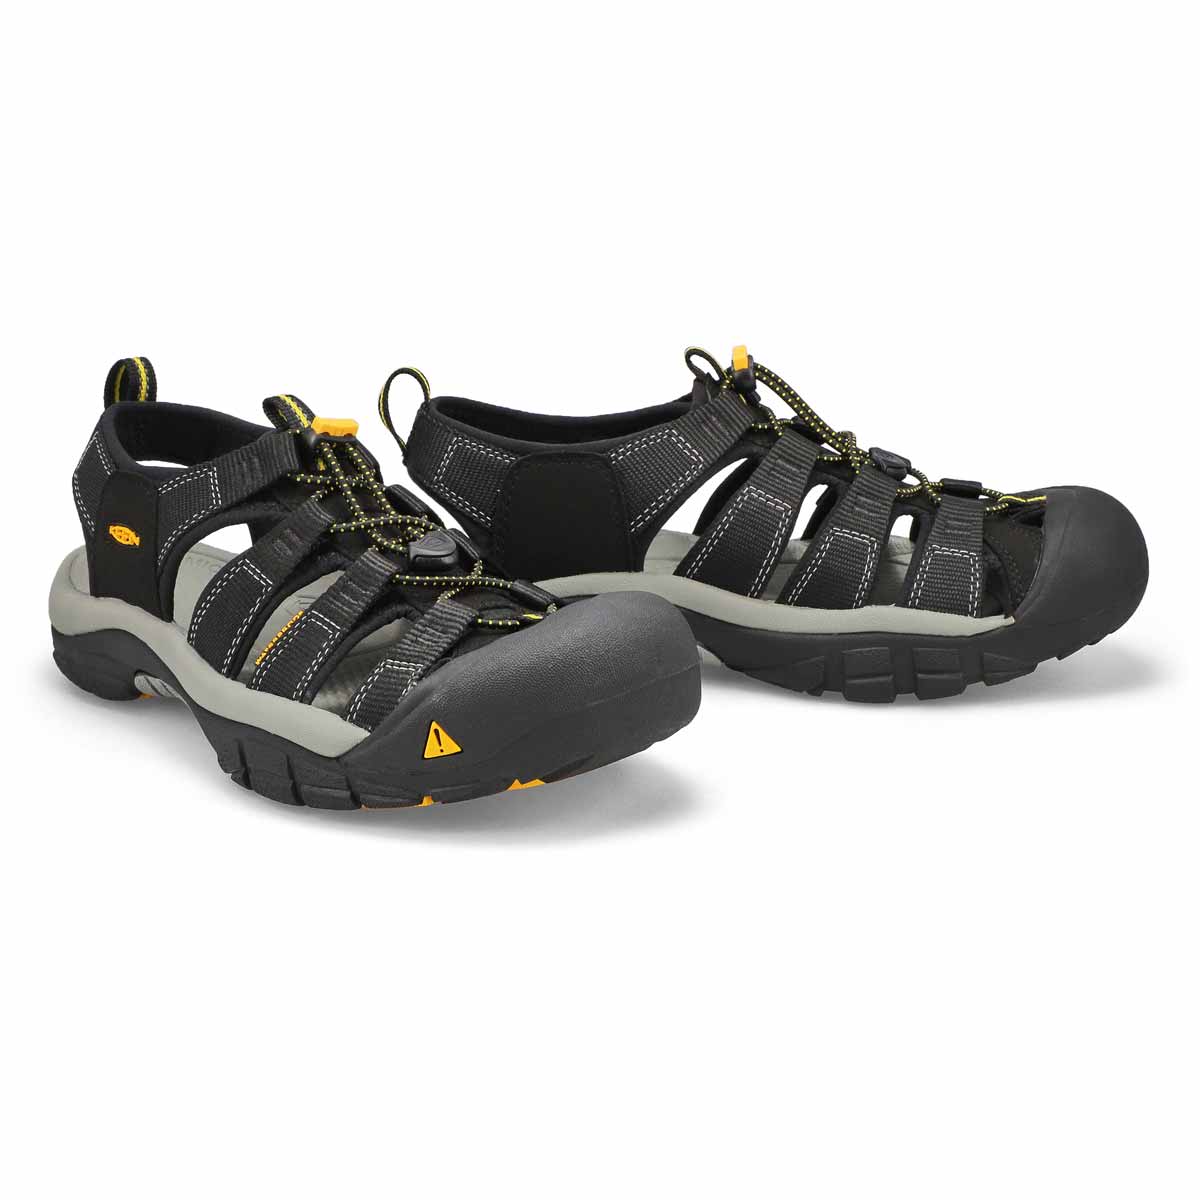 Men's Newport H2 Sport Sandal - Black